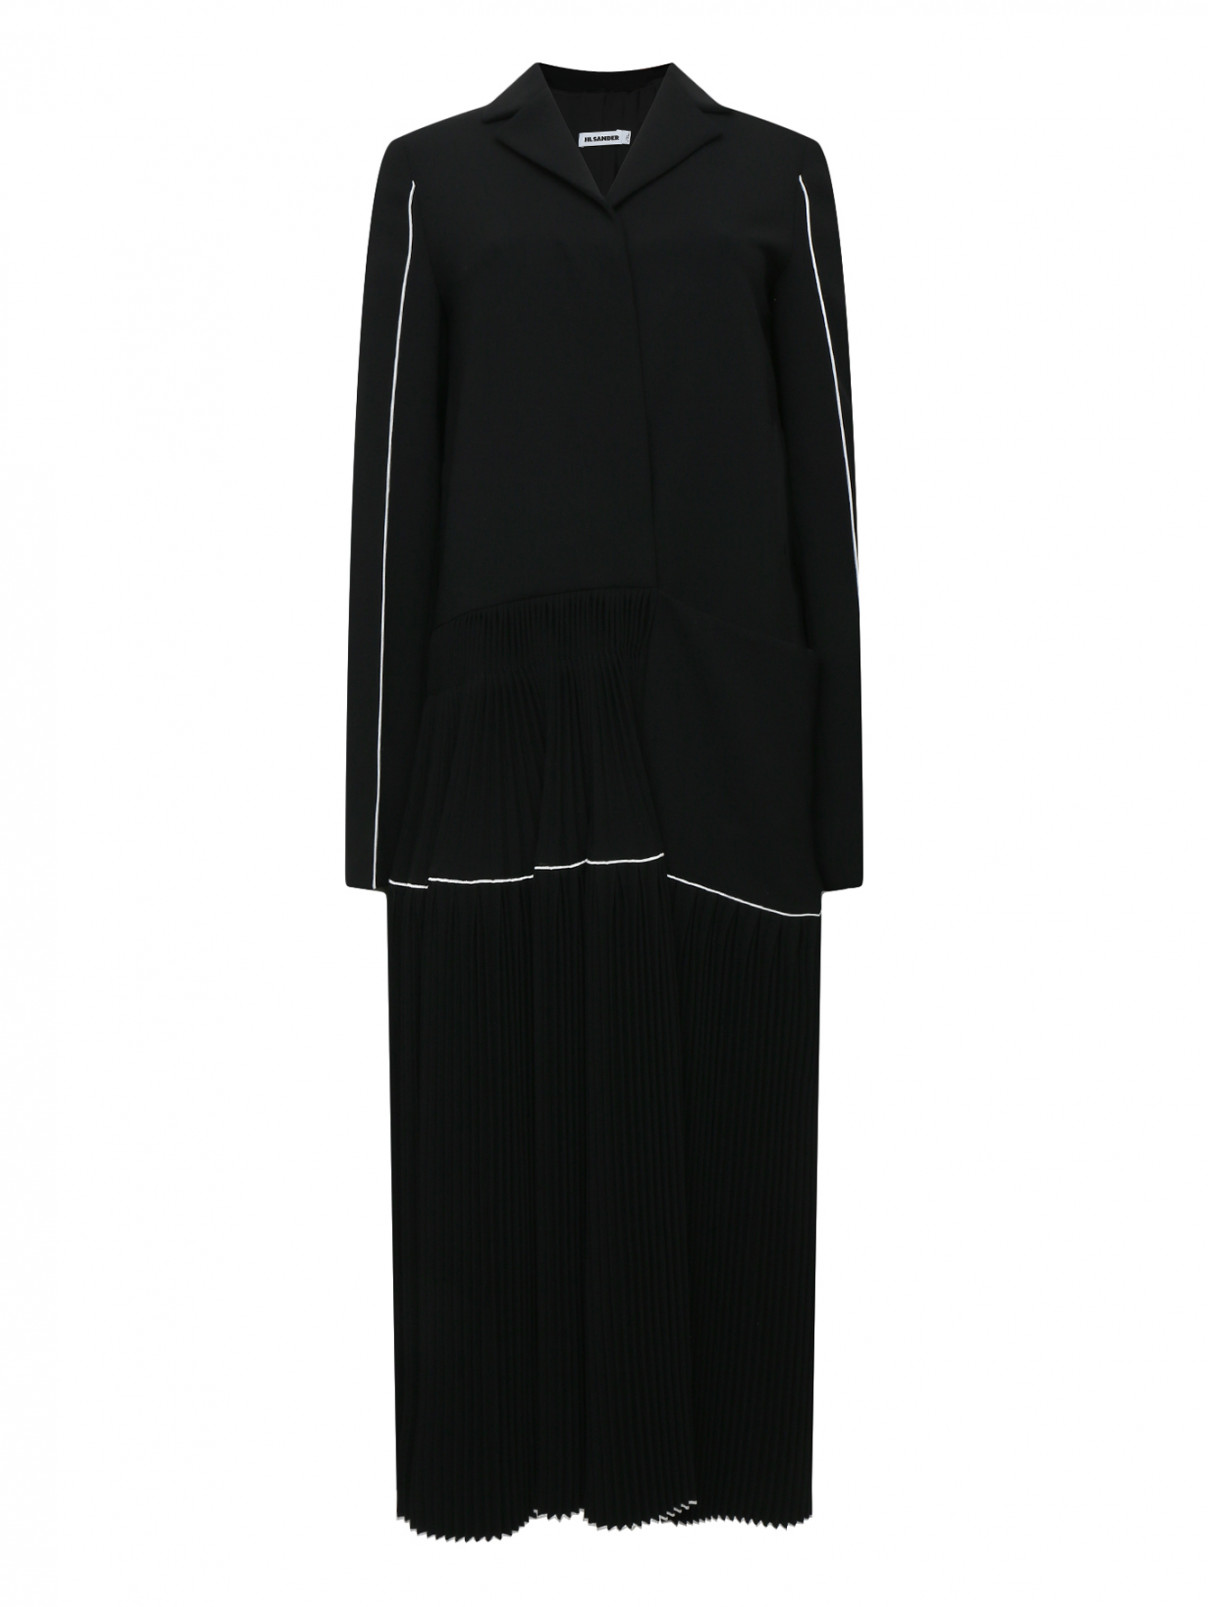 Пальто с драпировкой Jil Sander  –  Общий вид  – Цвет:  Черный